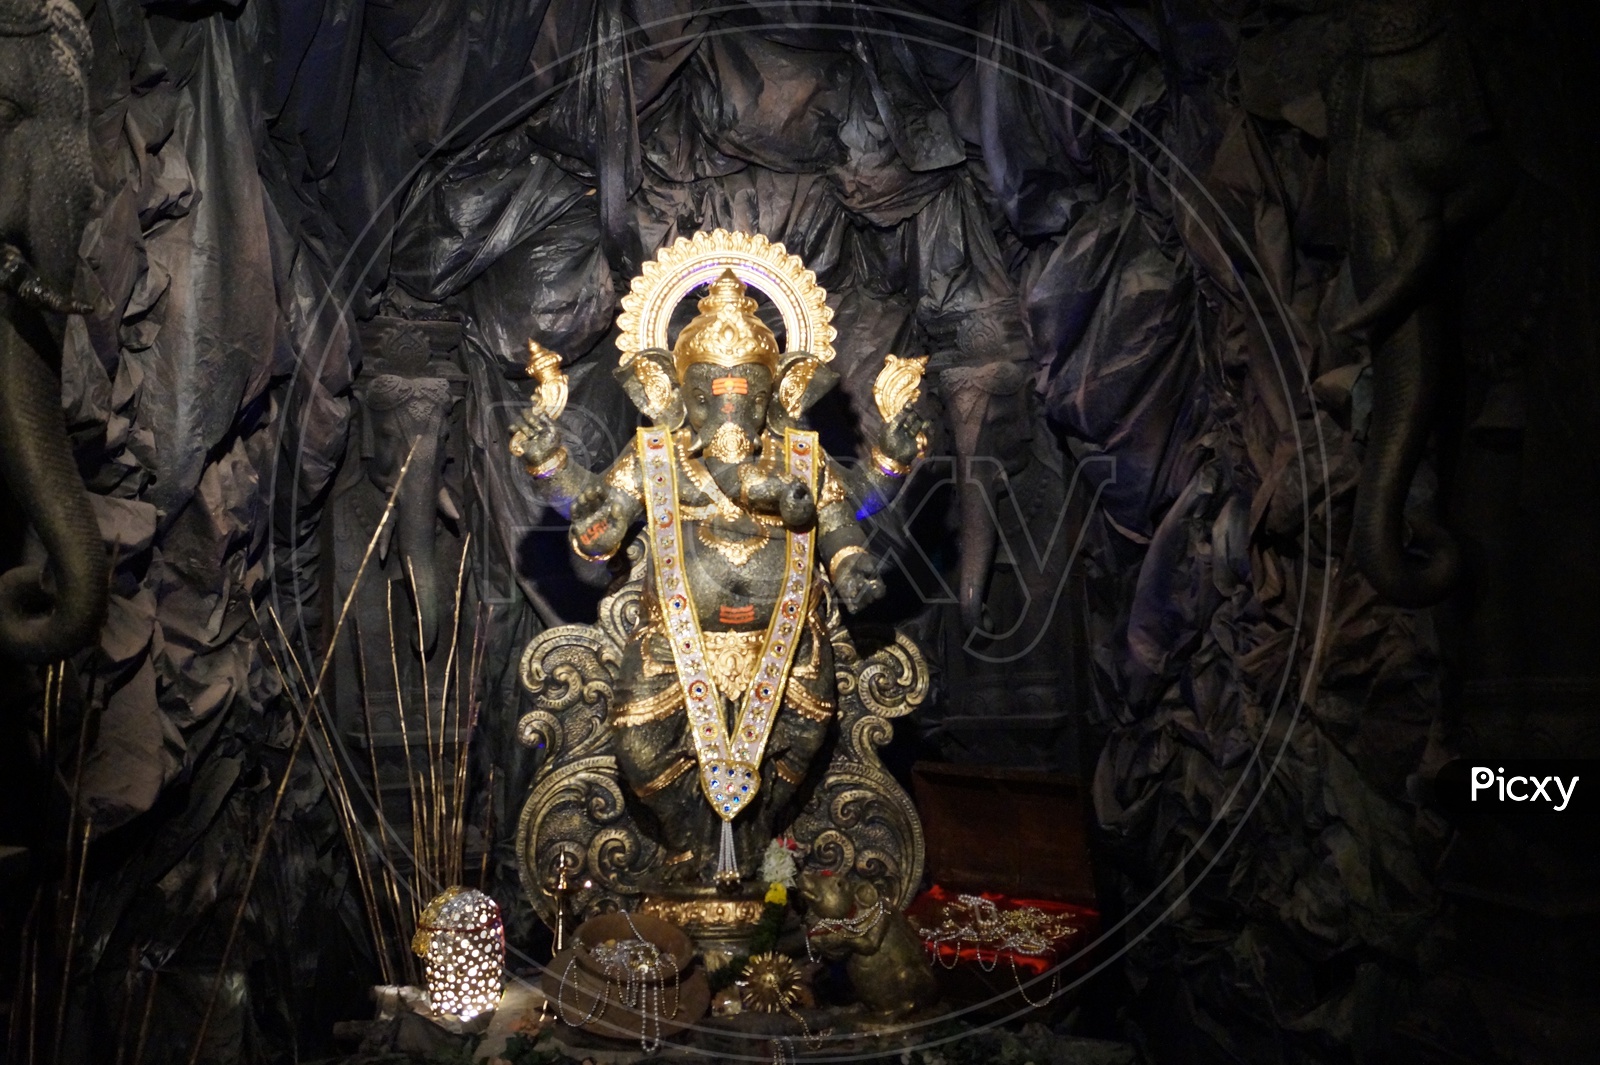 Eco Friendly Ganesh Idol